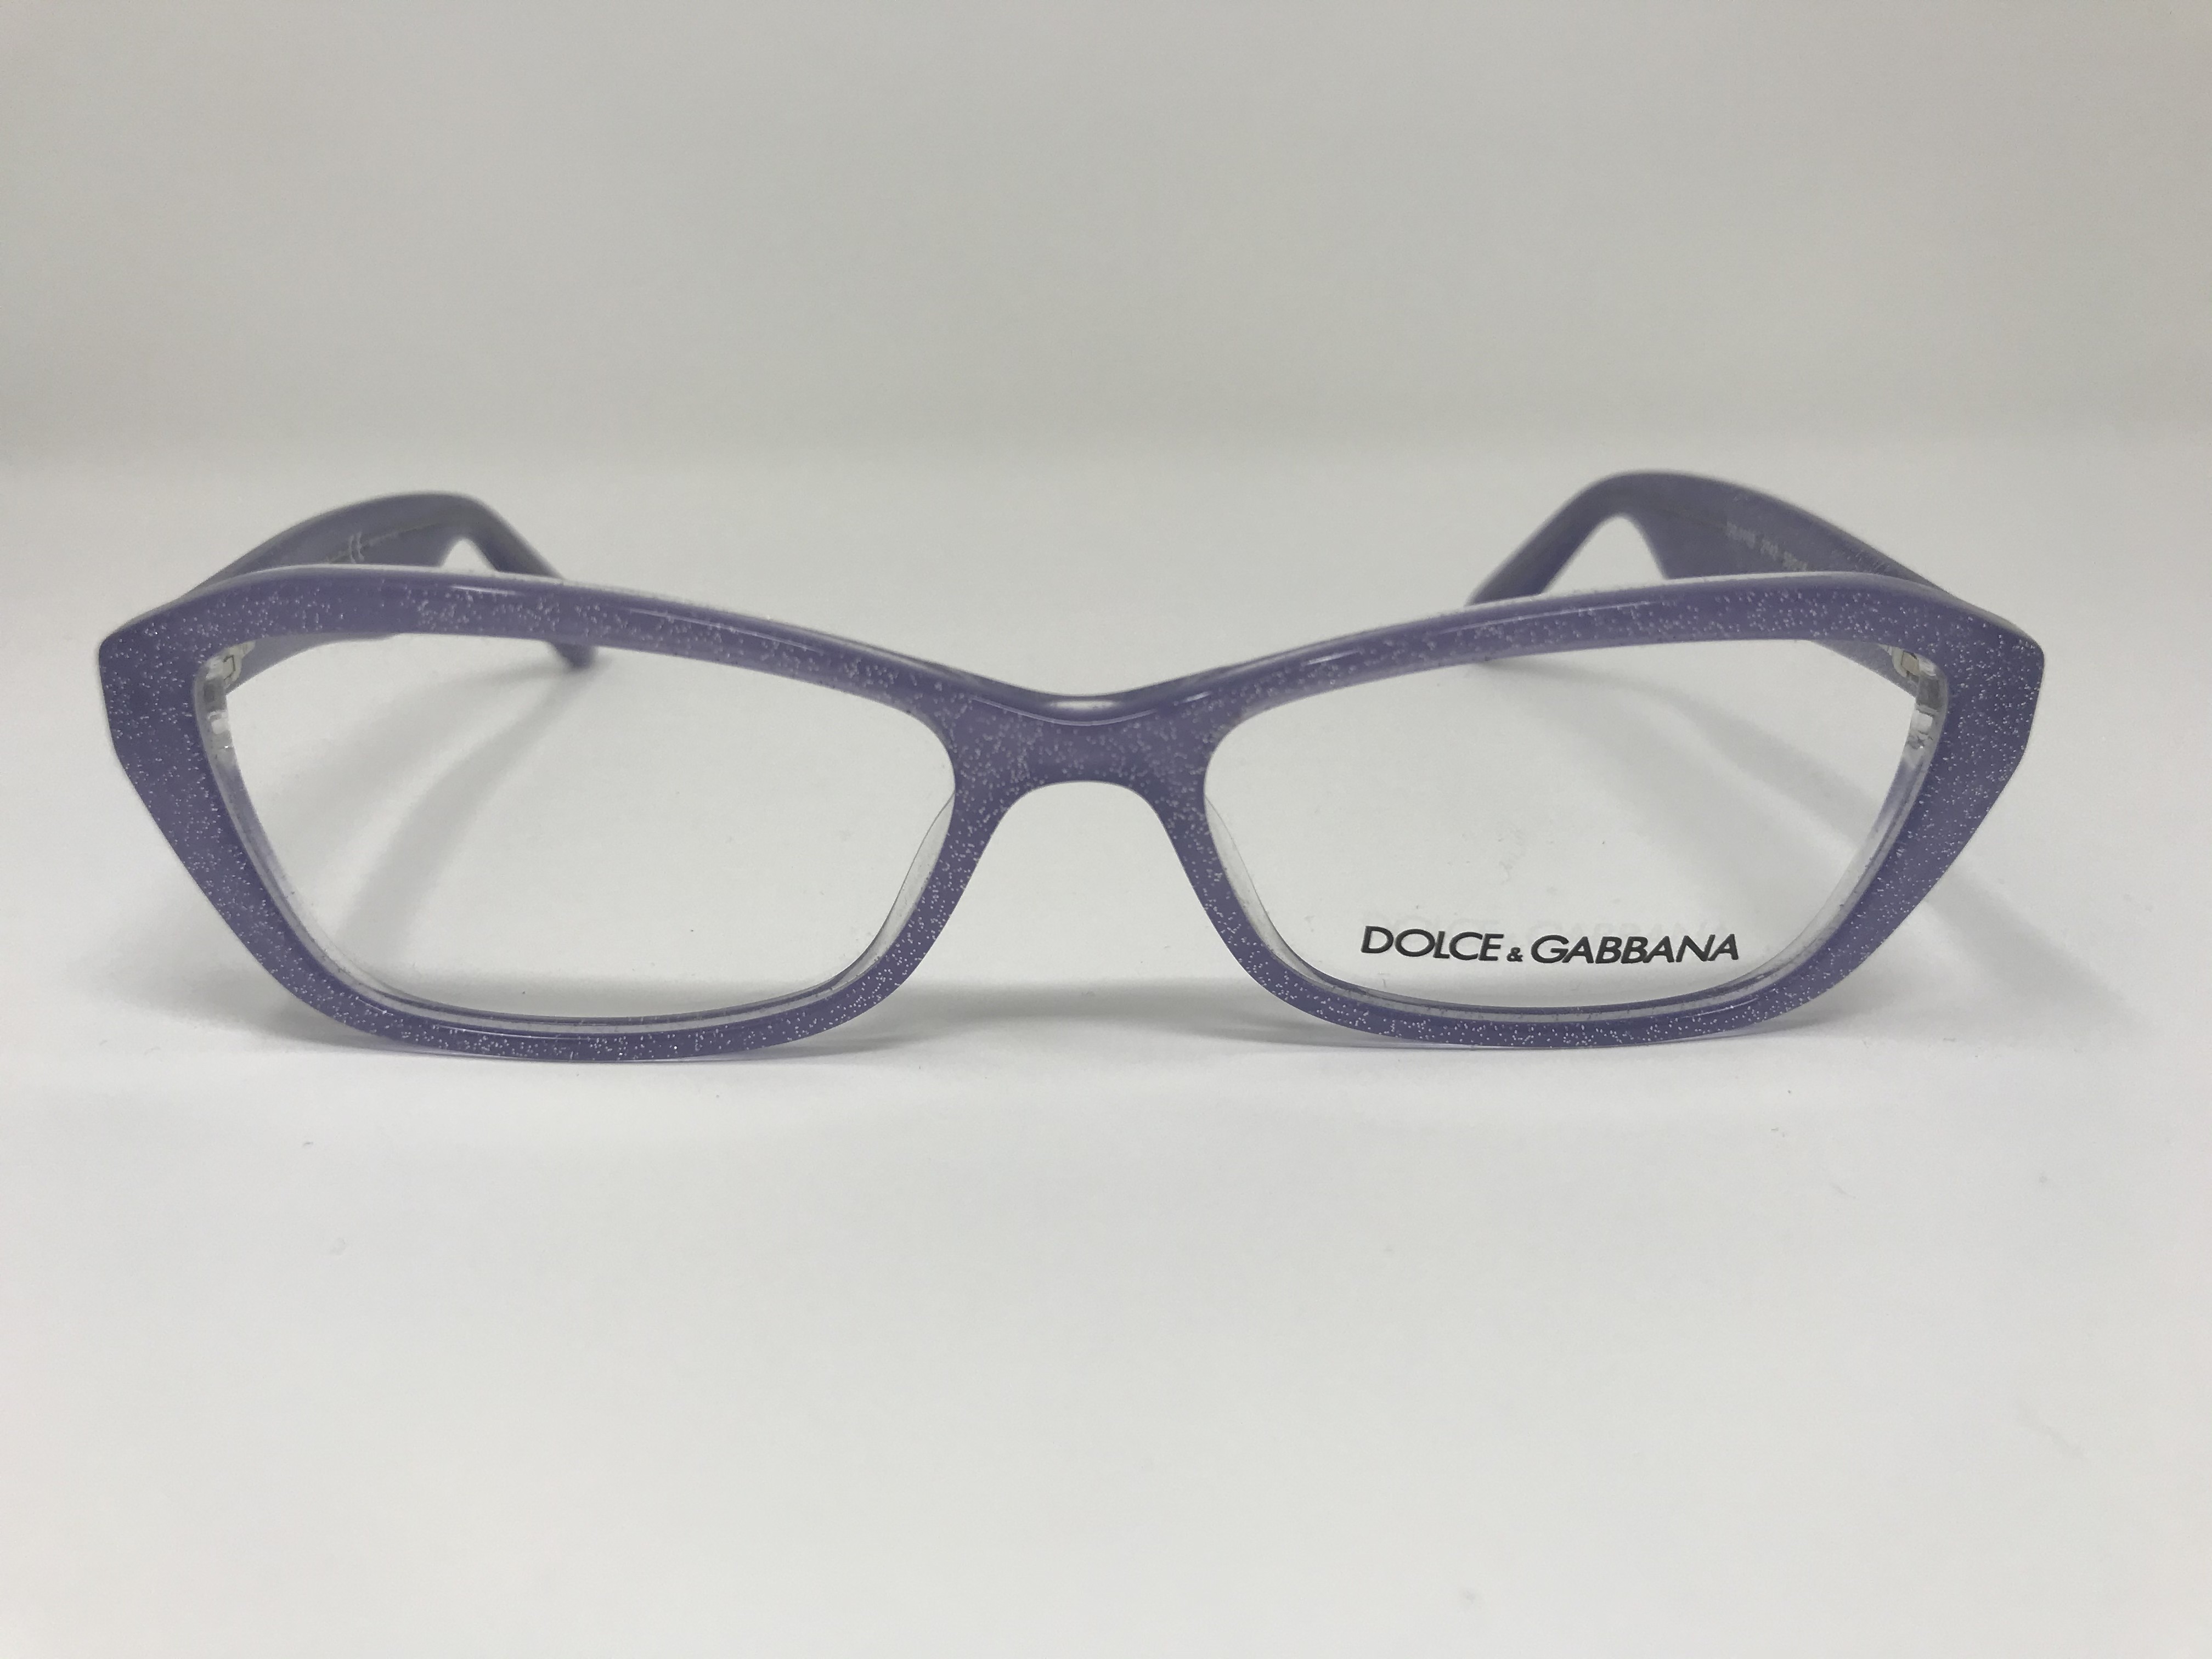 Dolce & Gabbana DG 3168 Women's eyeglasses